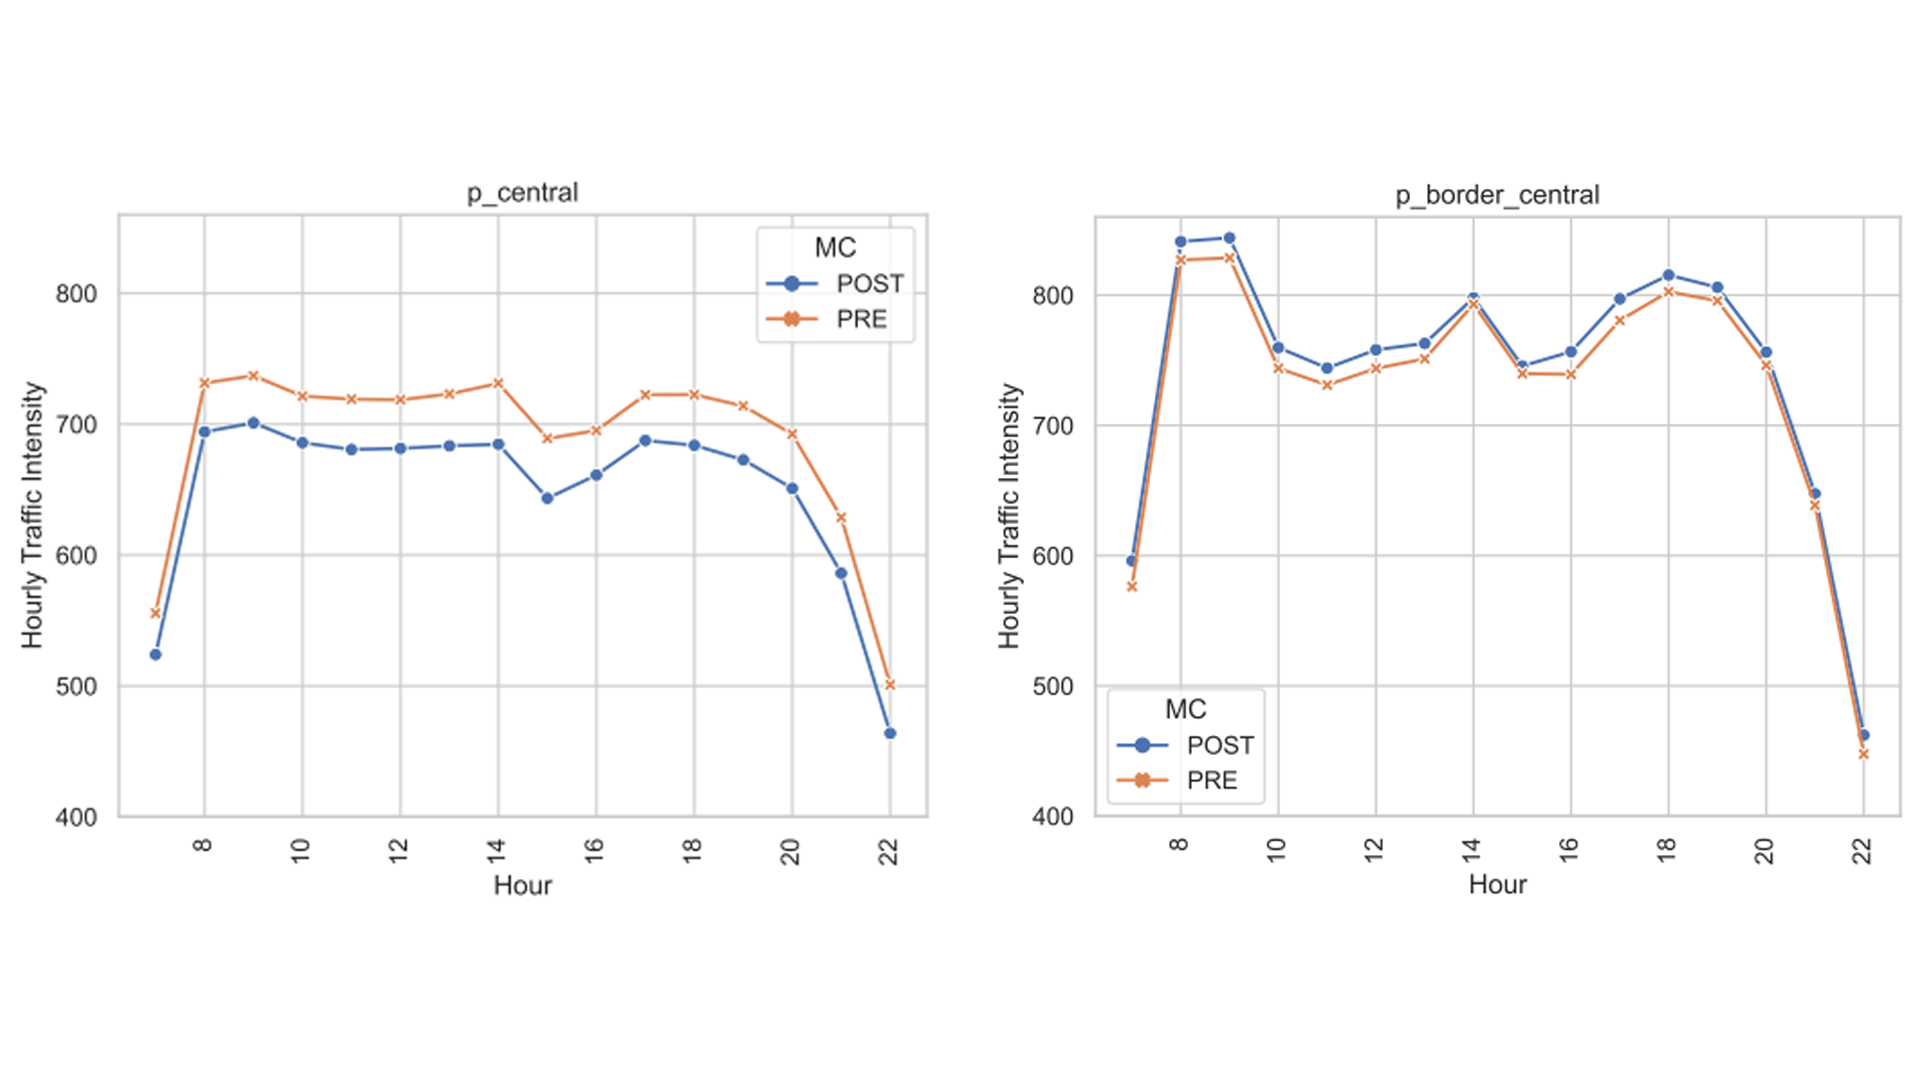 Variaciones en la intensidad horario de tráfico por áreas antes y después de la implementación de Madrid Central 